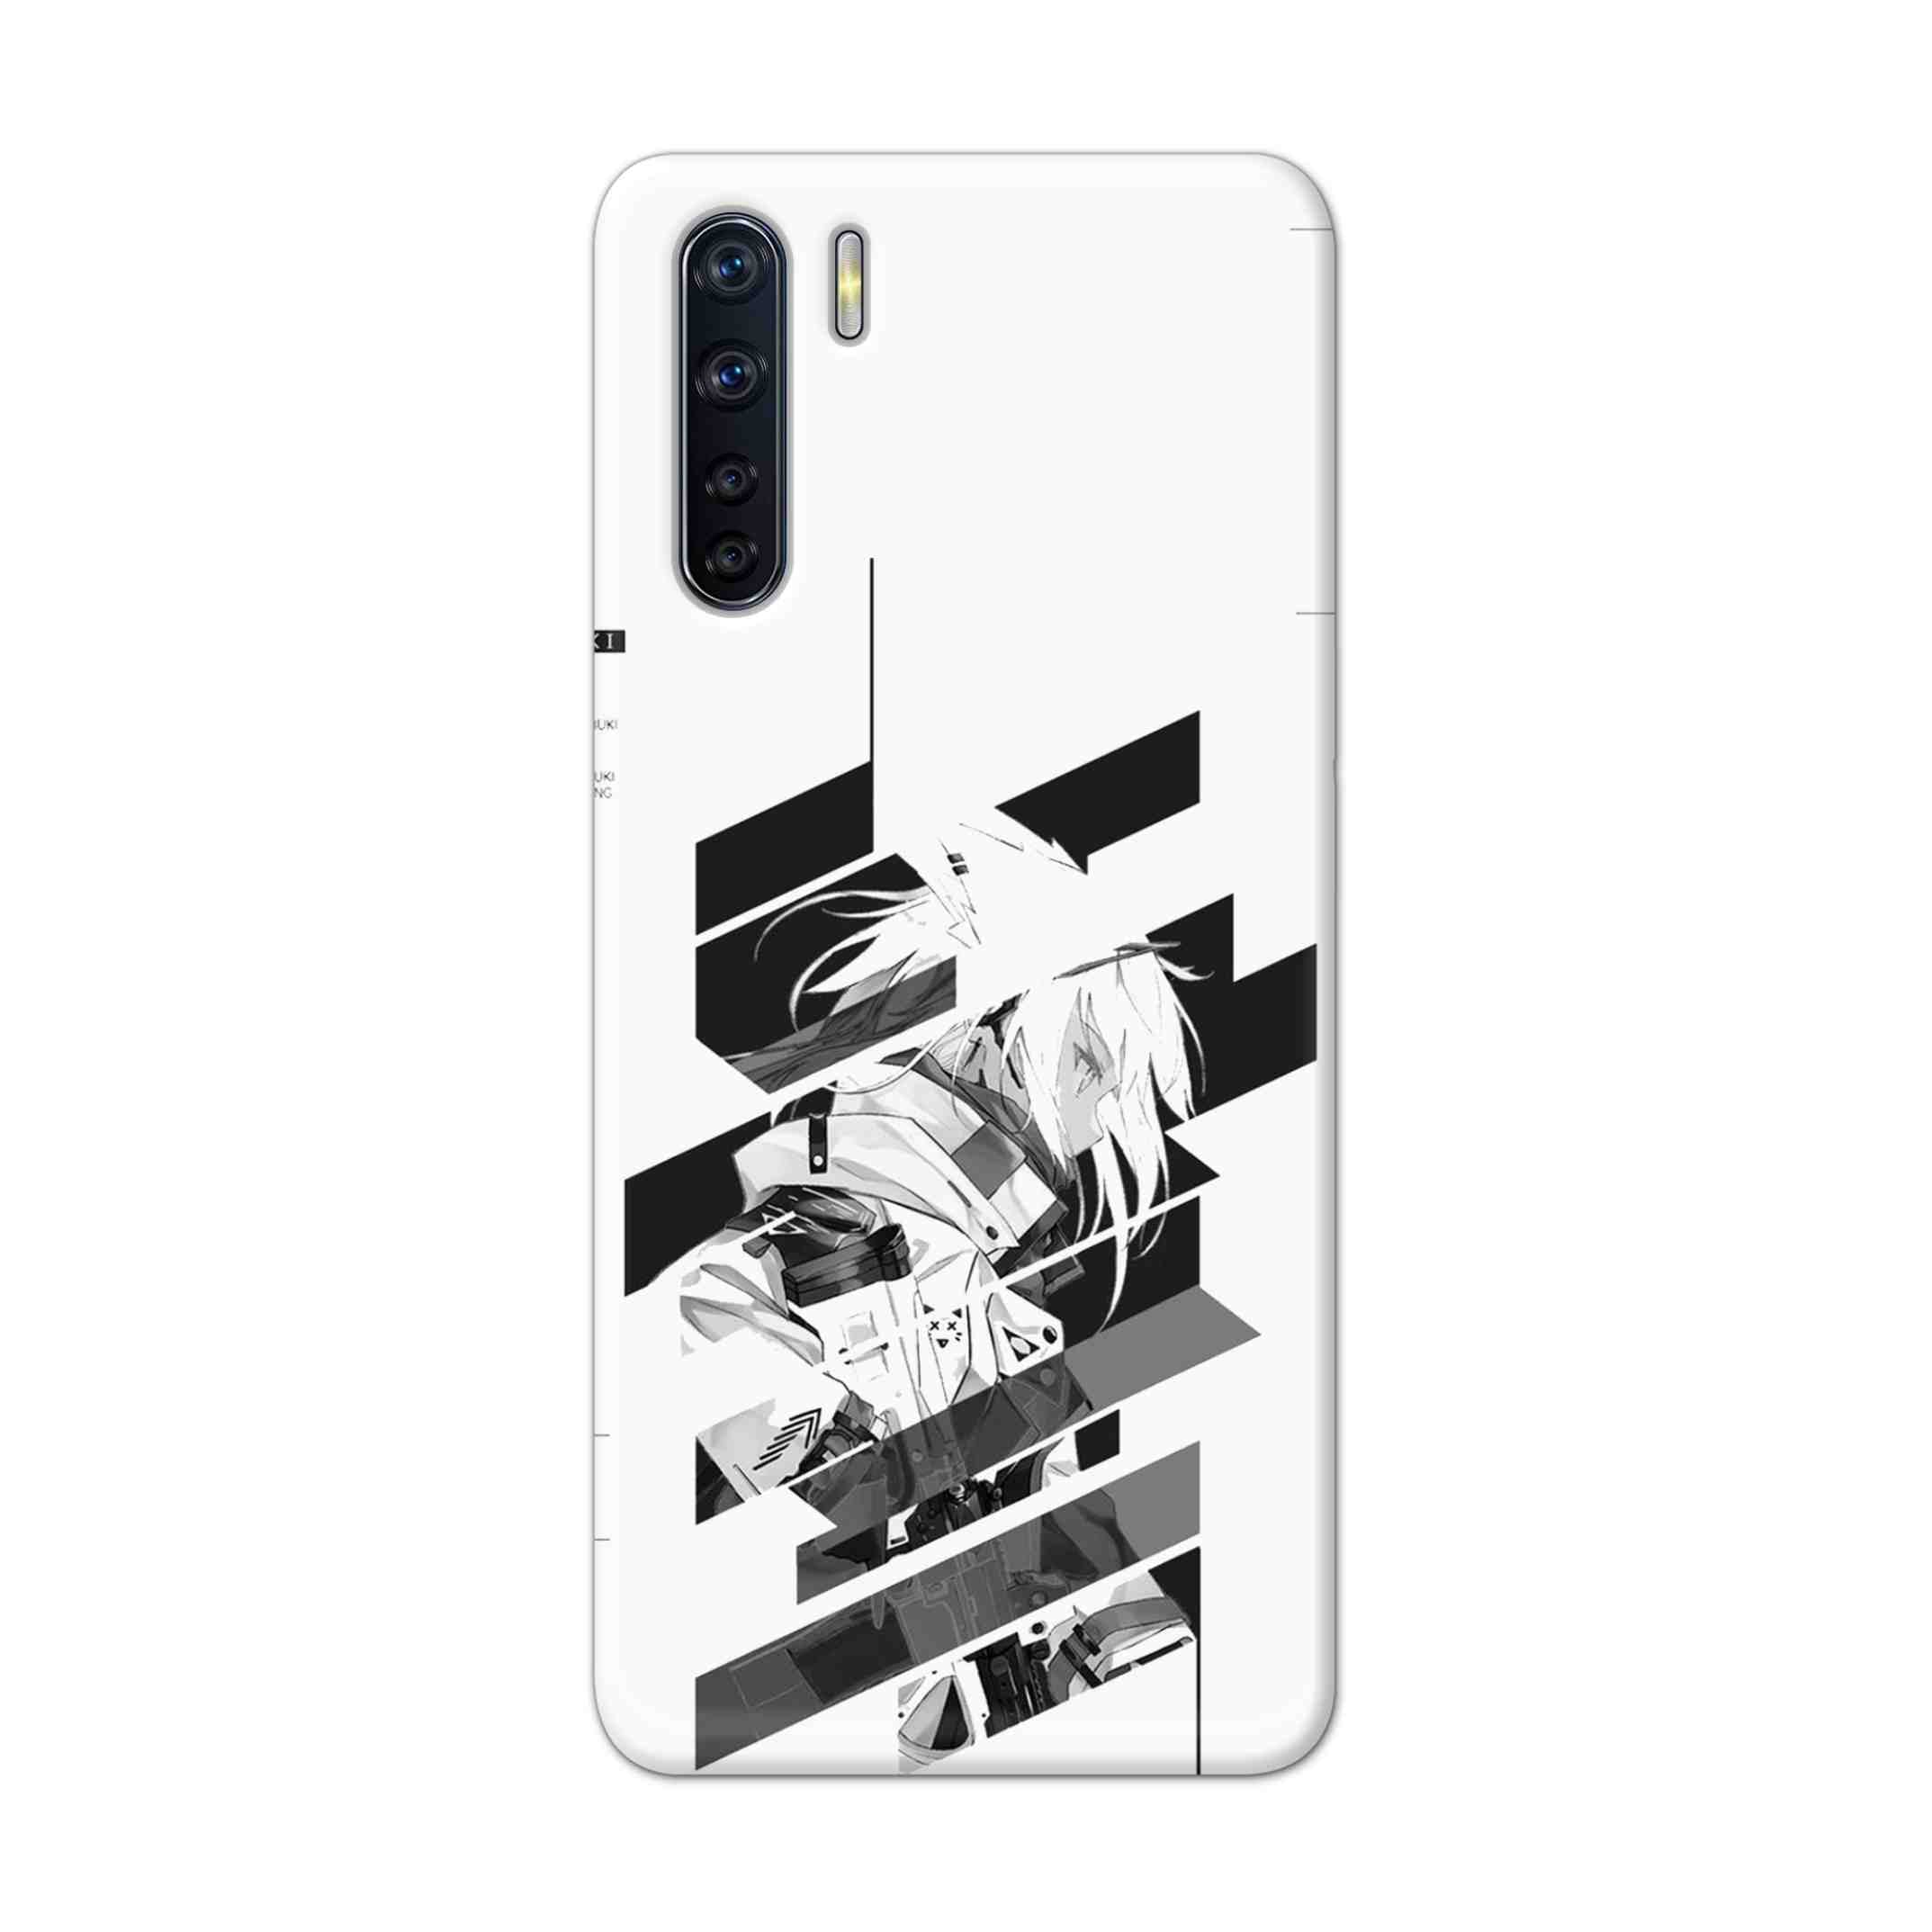 Buy Fubuki Hard Back Mobile Phone Case Cover For OPPO F15 Online